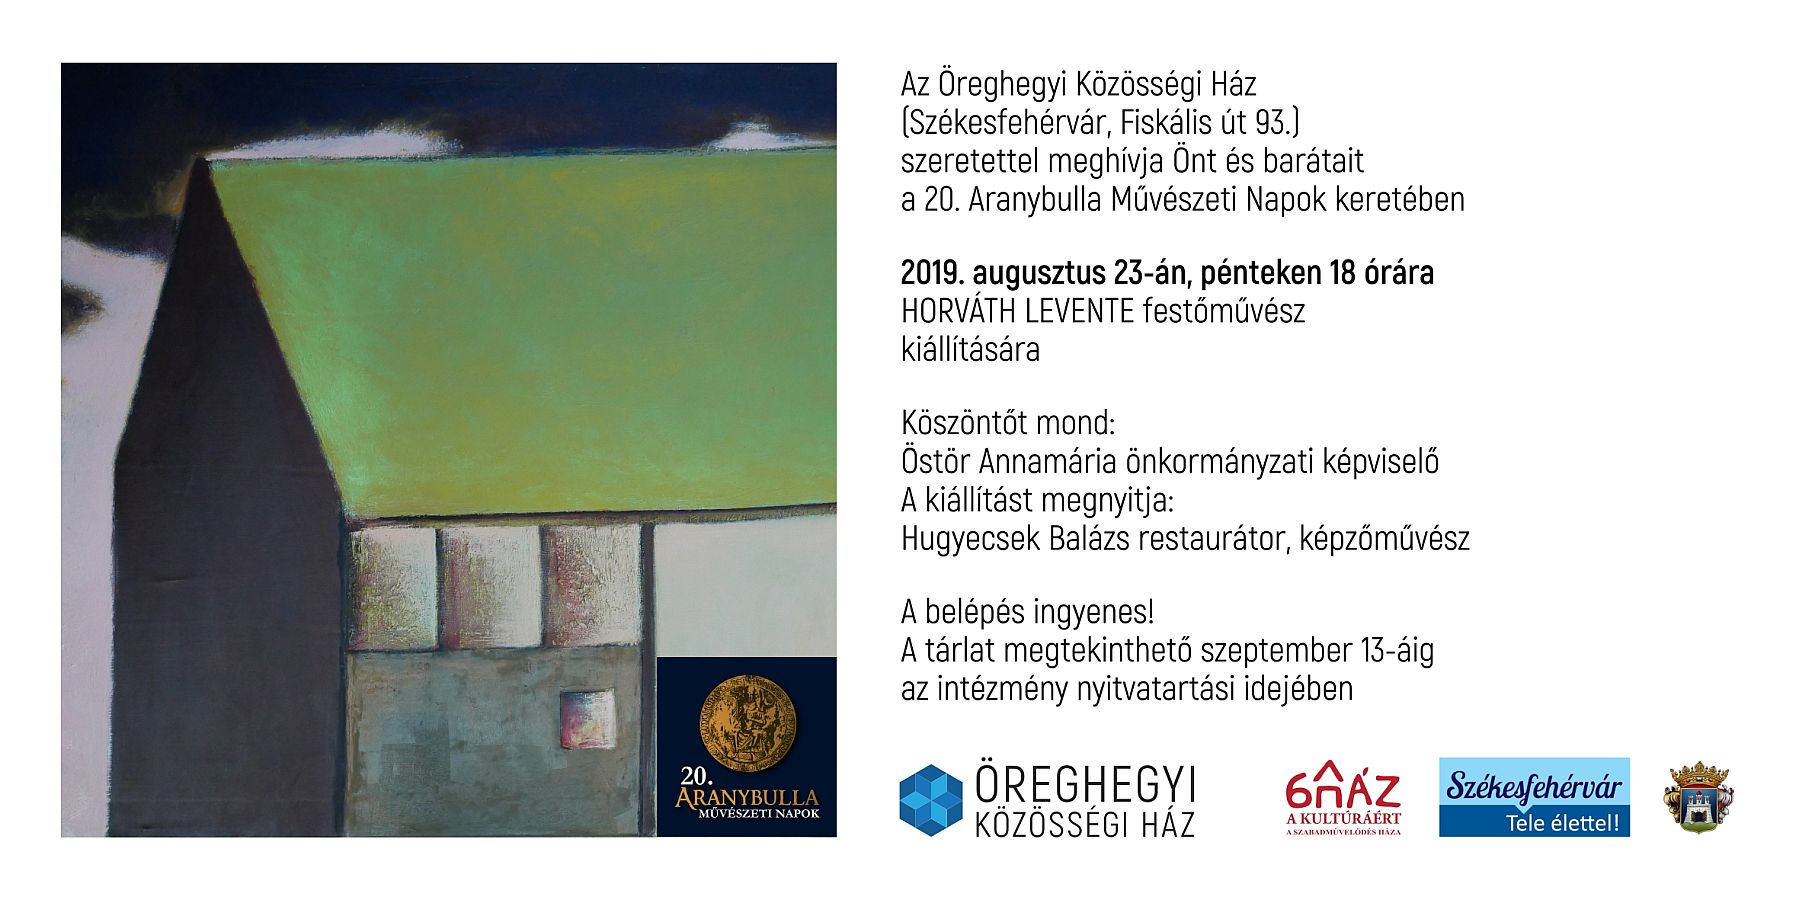 Horváth Levente, festőművész kiállítása nyílik meg az Öreghegyi Közösségi Házban